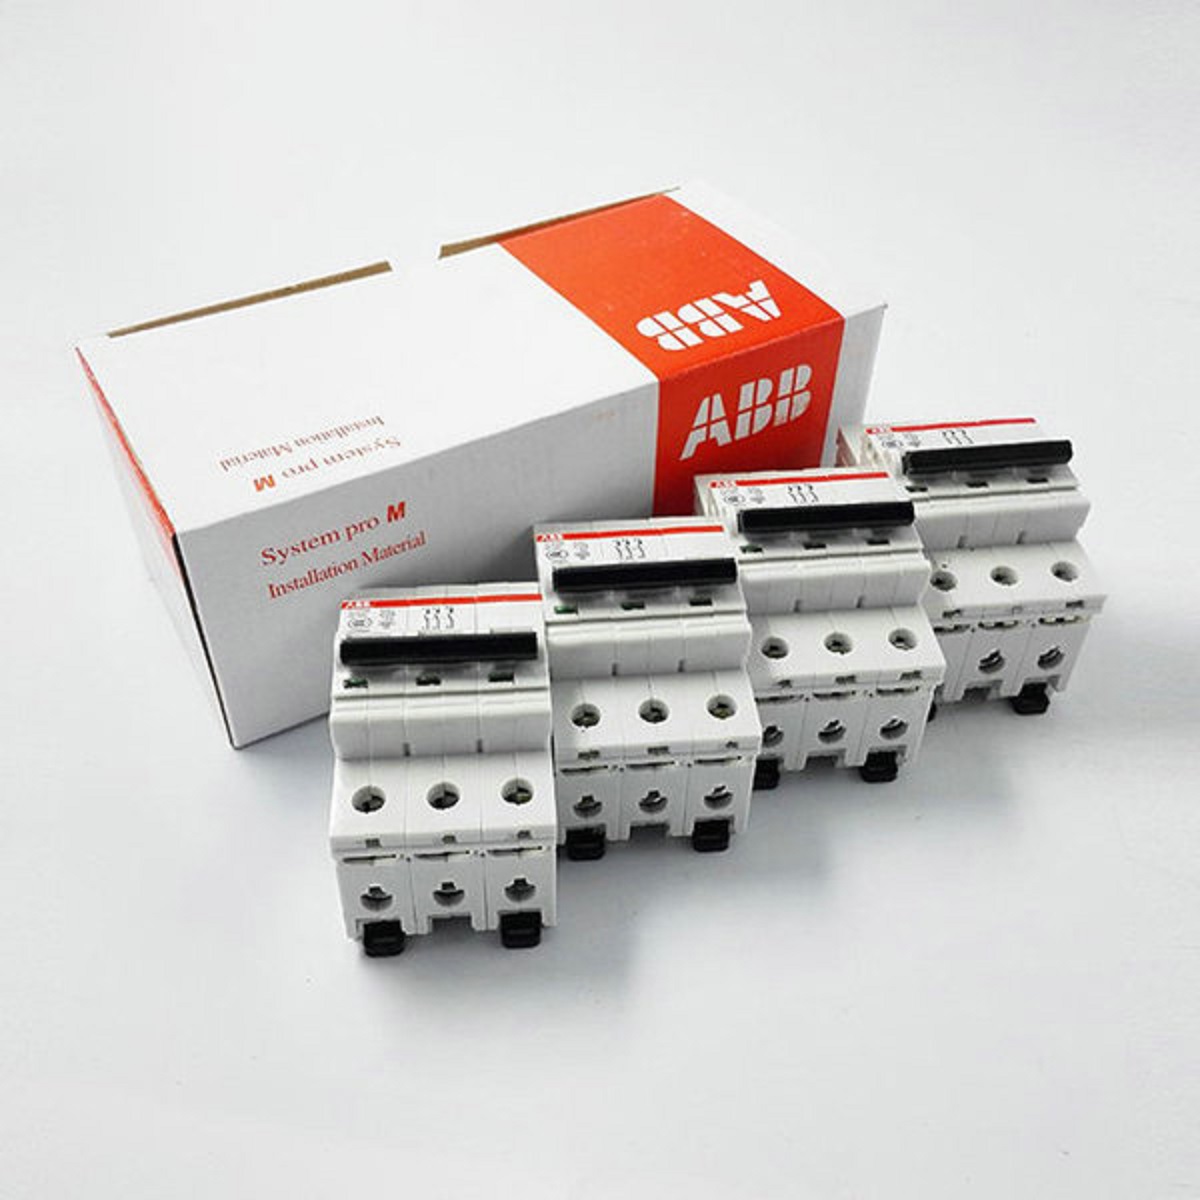 ABB微型断路器SH201-B6  10103904 
SH201-B10  10103905 ABB,SH200,微型断路器,空气开关,abb断路器